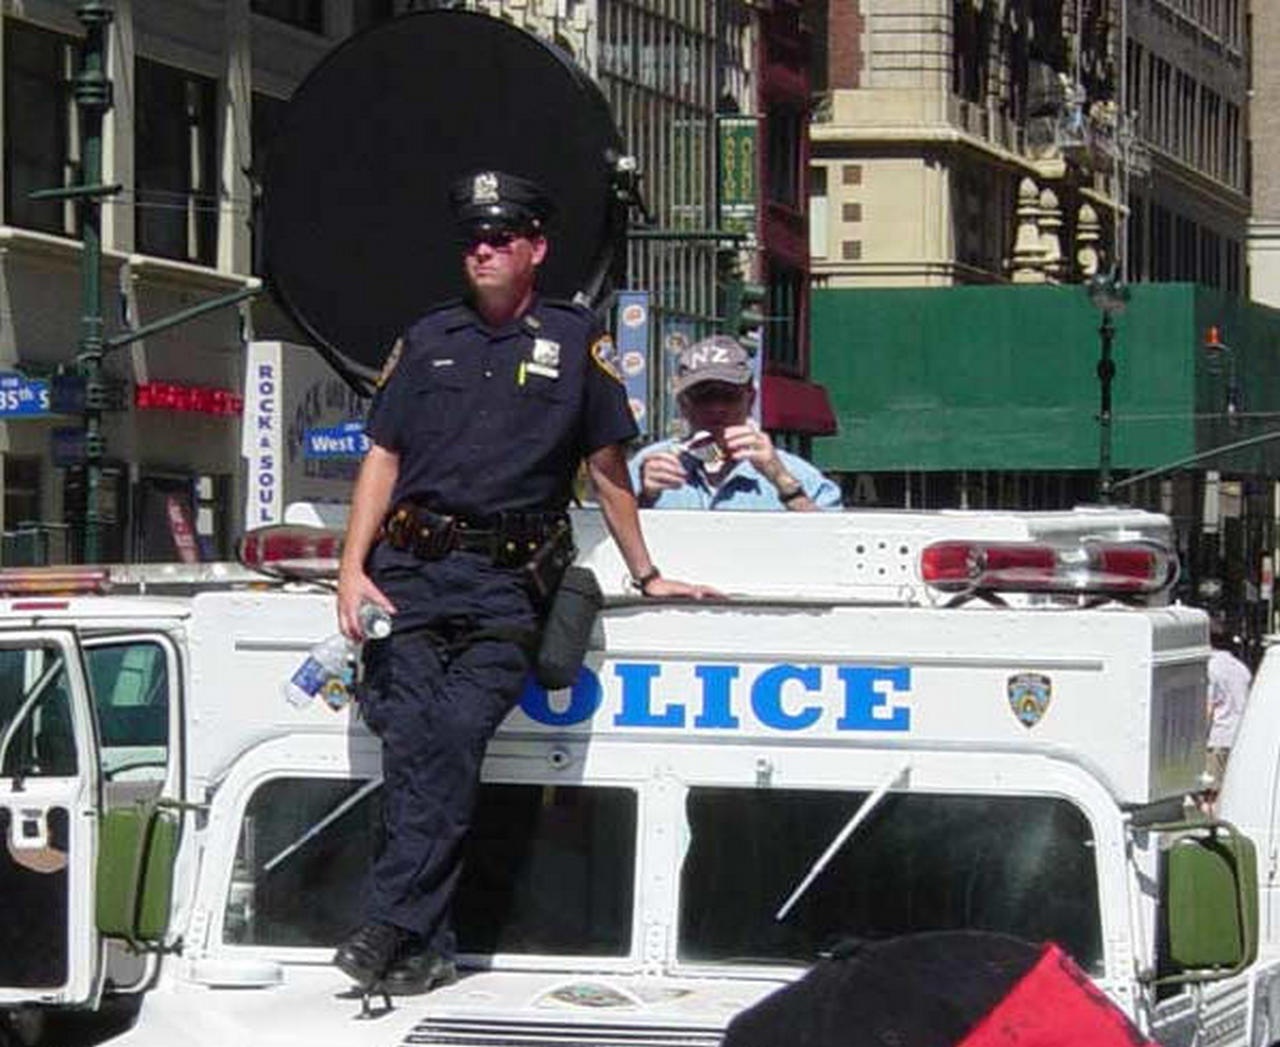 Акустическое устройство дальнего действия (круглое чёрное устройство) используются в качестве нелетального средства борьбы с массовыми беспорядками, например, в Нью-Йорке.